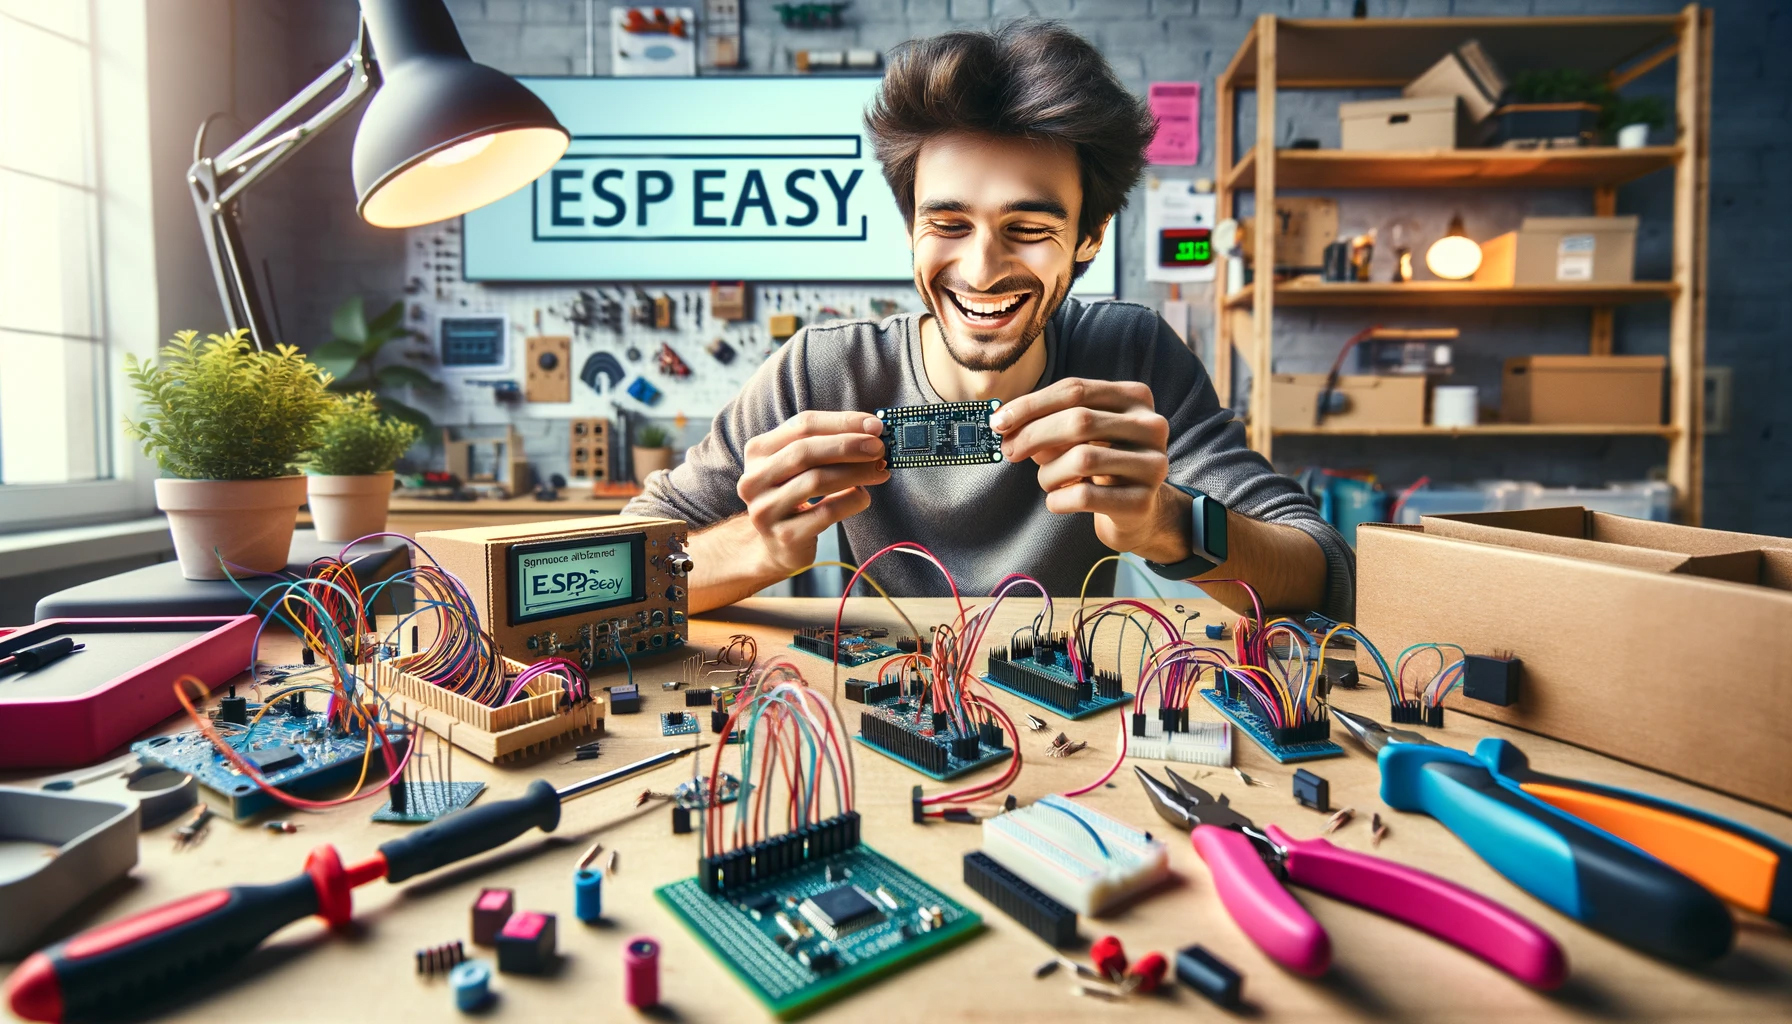 Esp Easy - Bastler konfiguriert ESP EASY auf sein Board